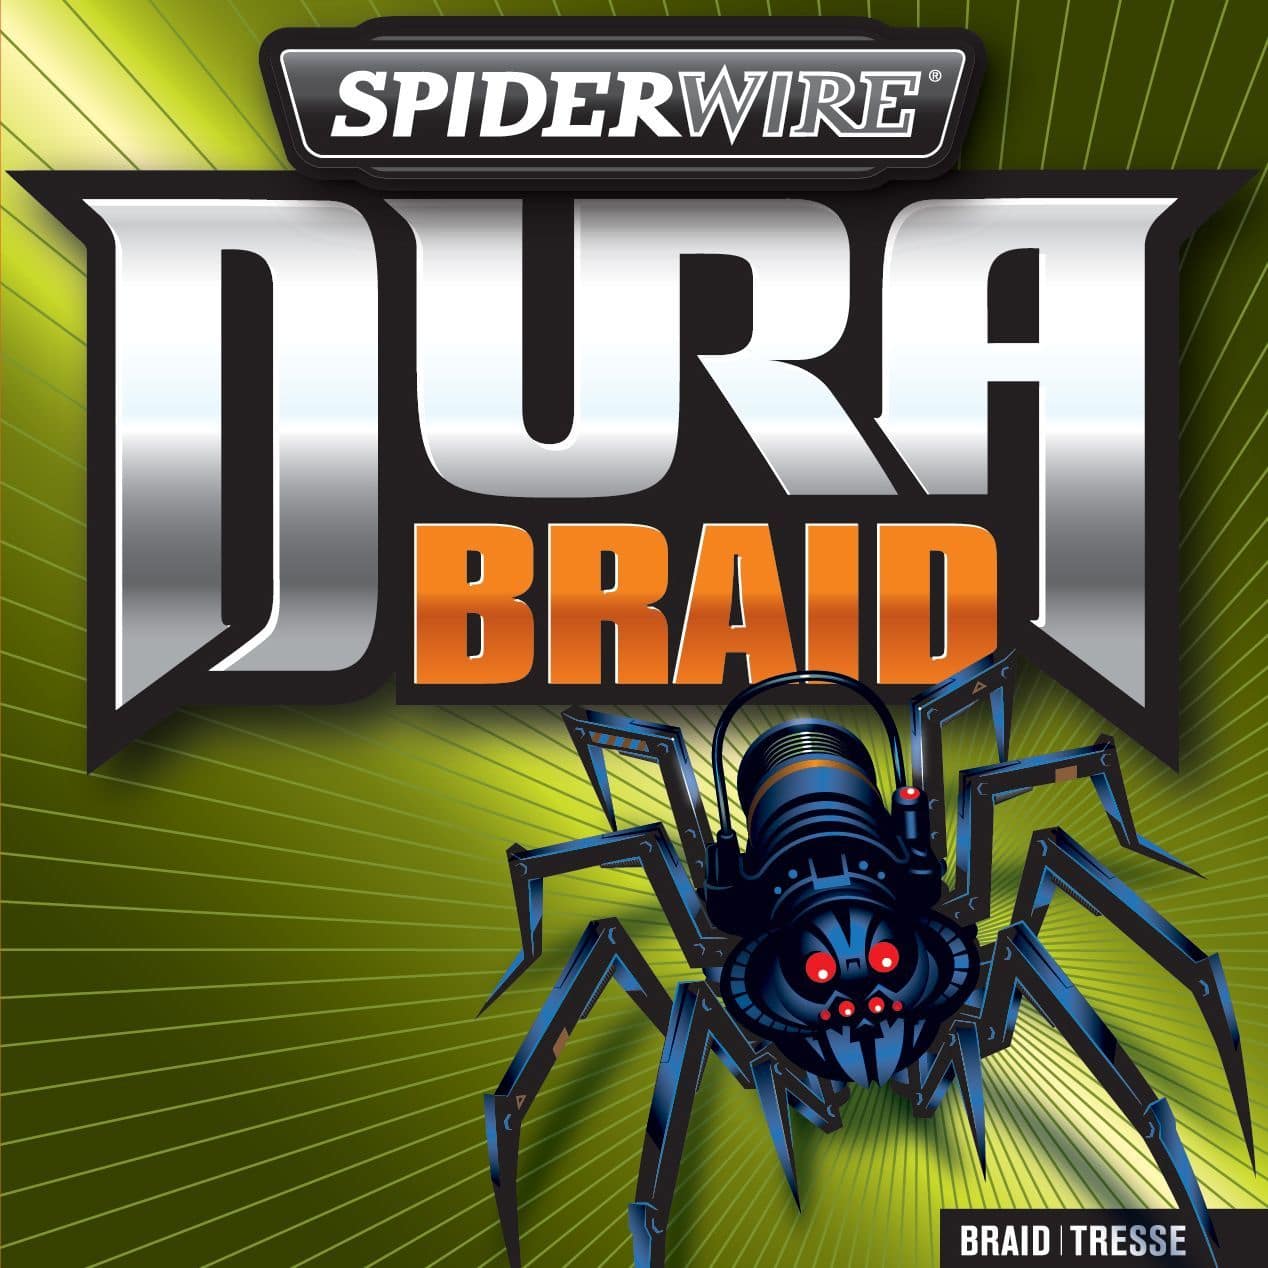 Spiderwire Durabraid Braided Line